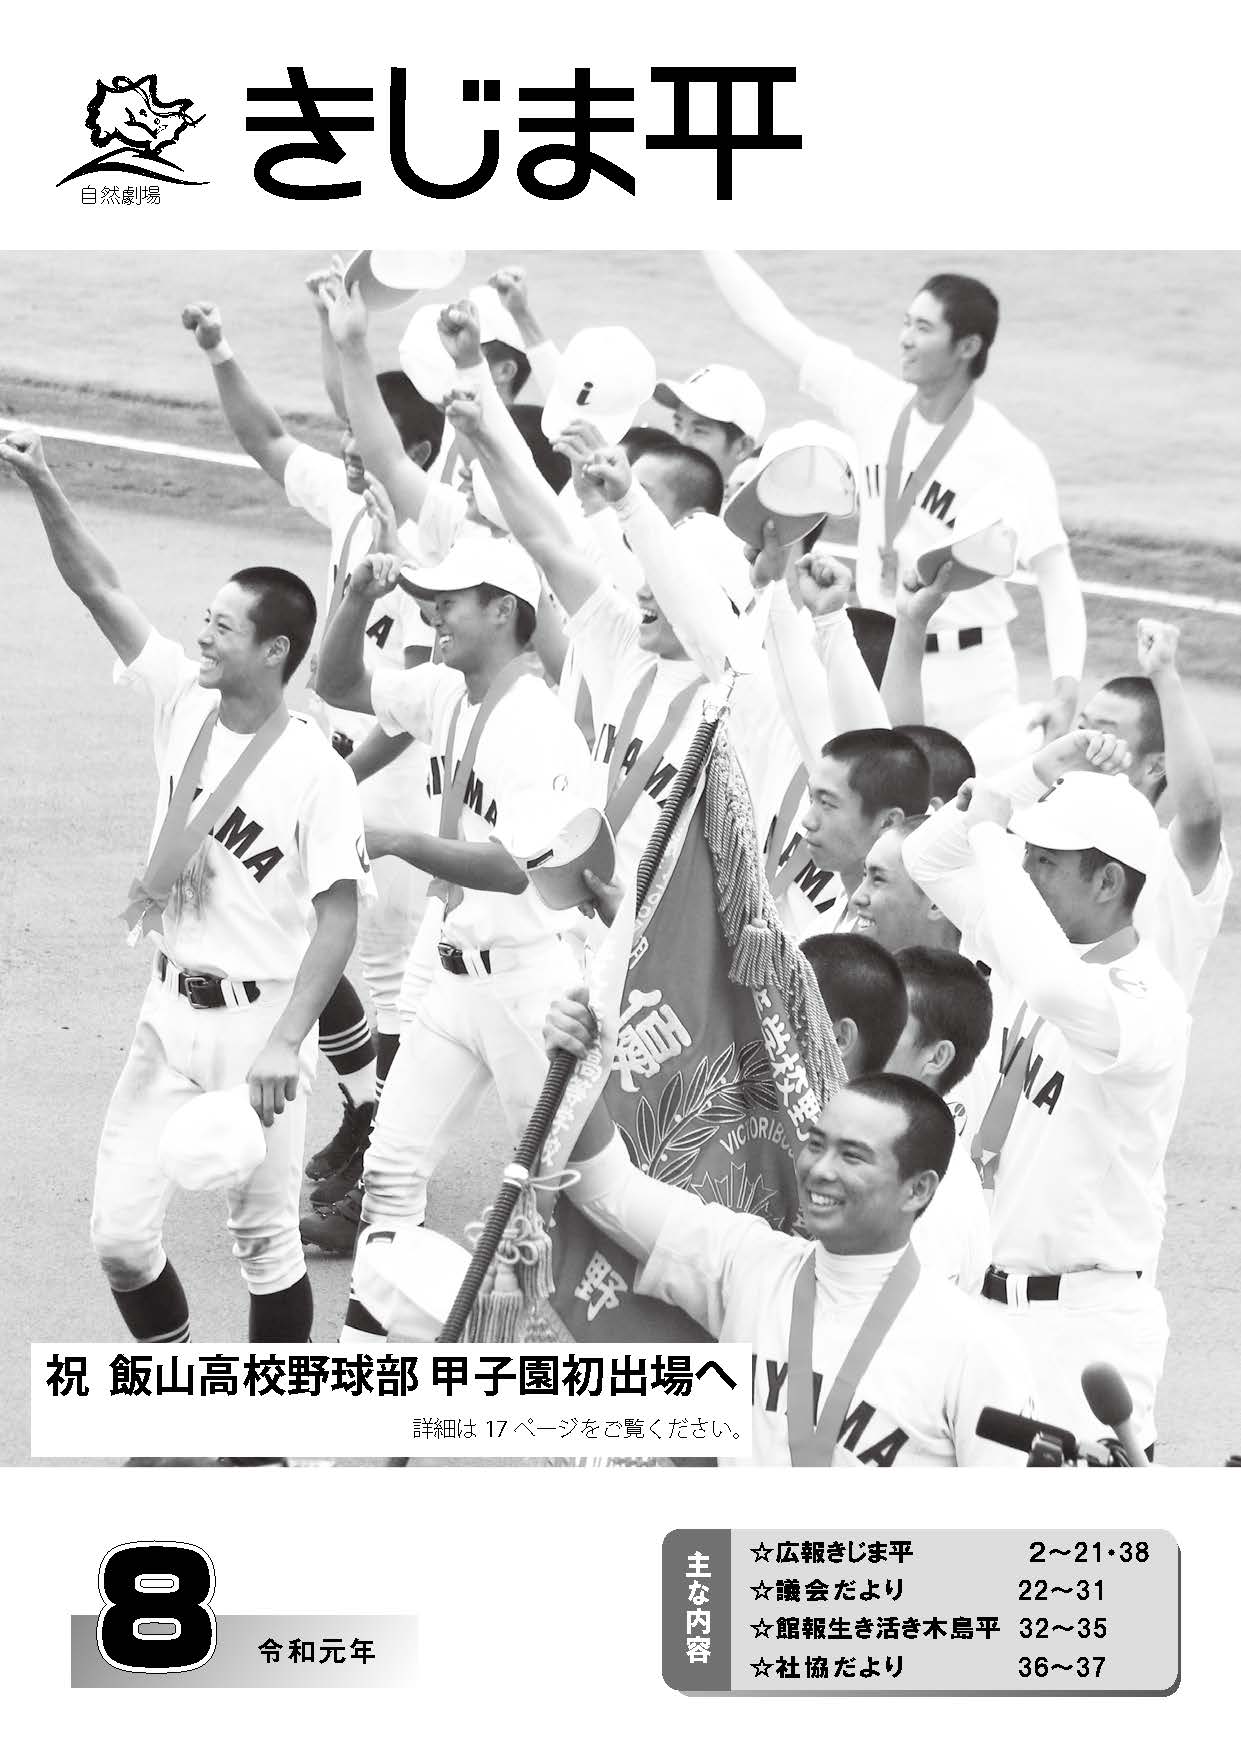 甲子園初出場の飯山高校野球部員たちの写真